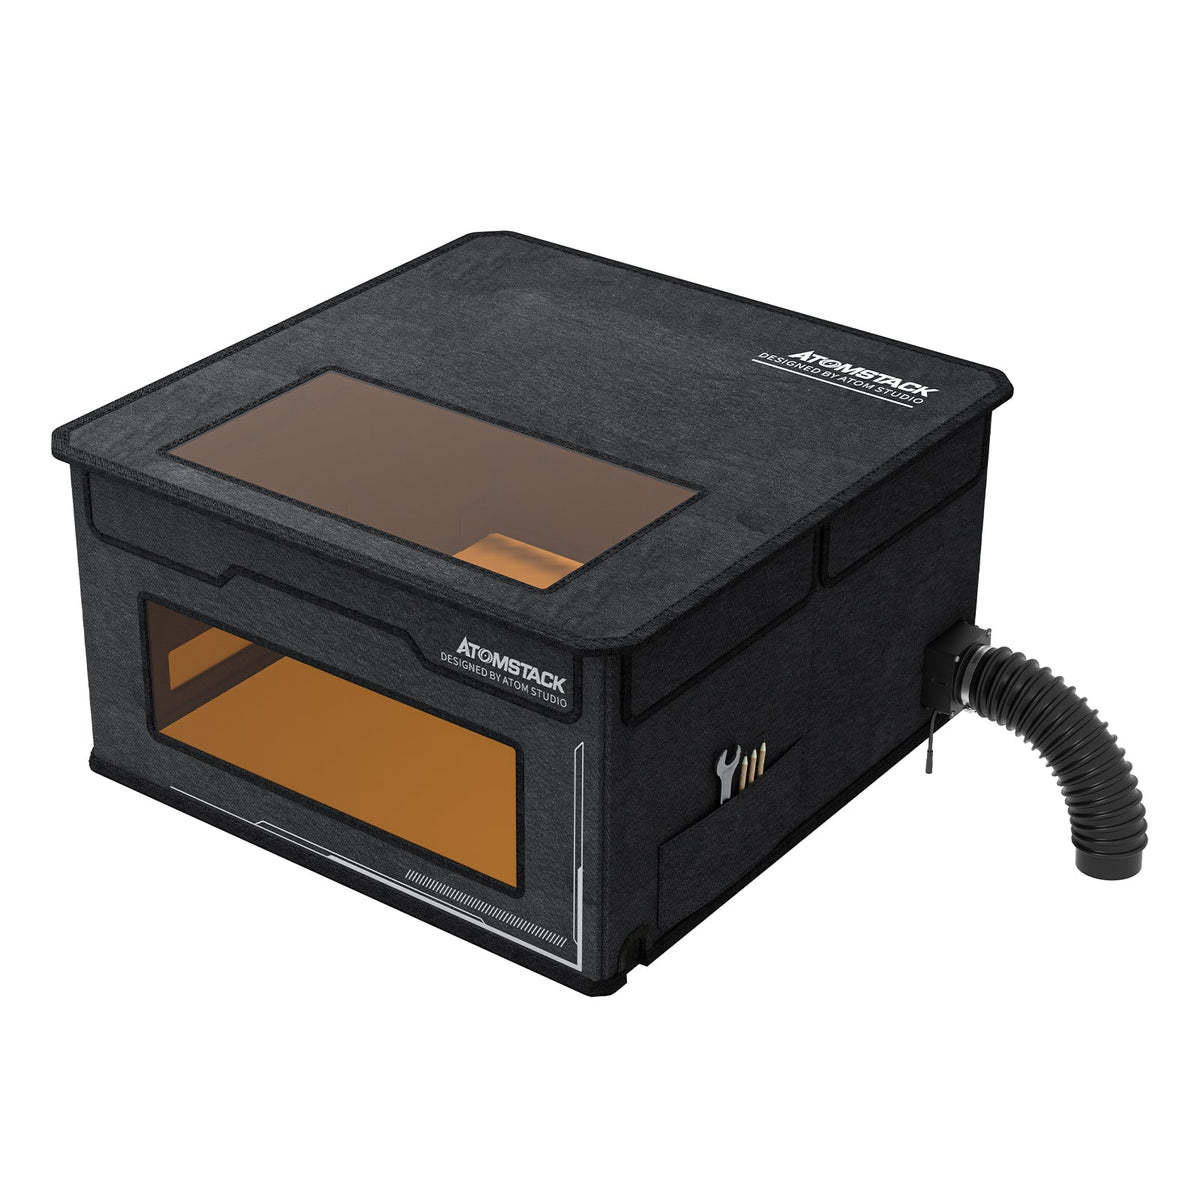 Caja AtomStack FB2 - Caja protectora para máquina de grabado láser a prueba de polvo